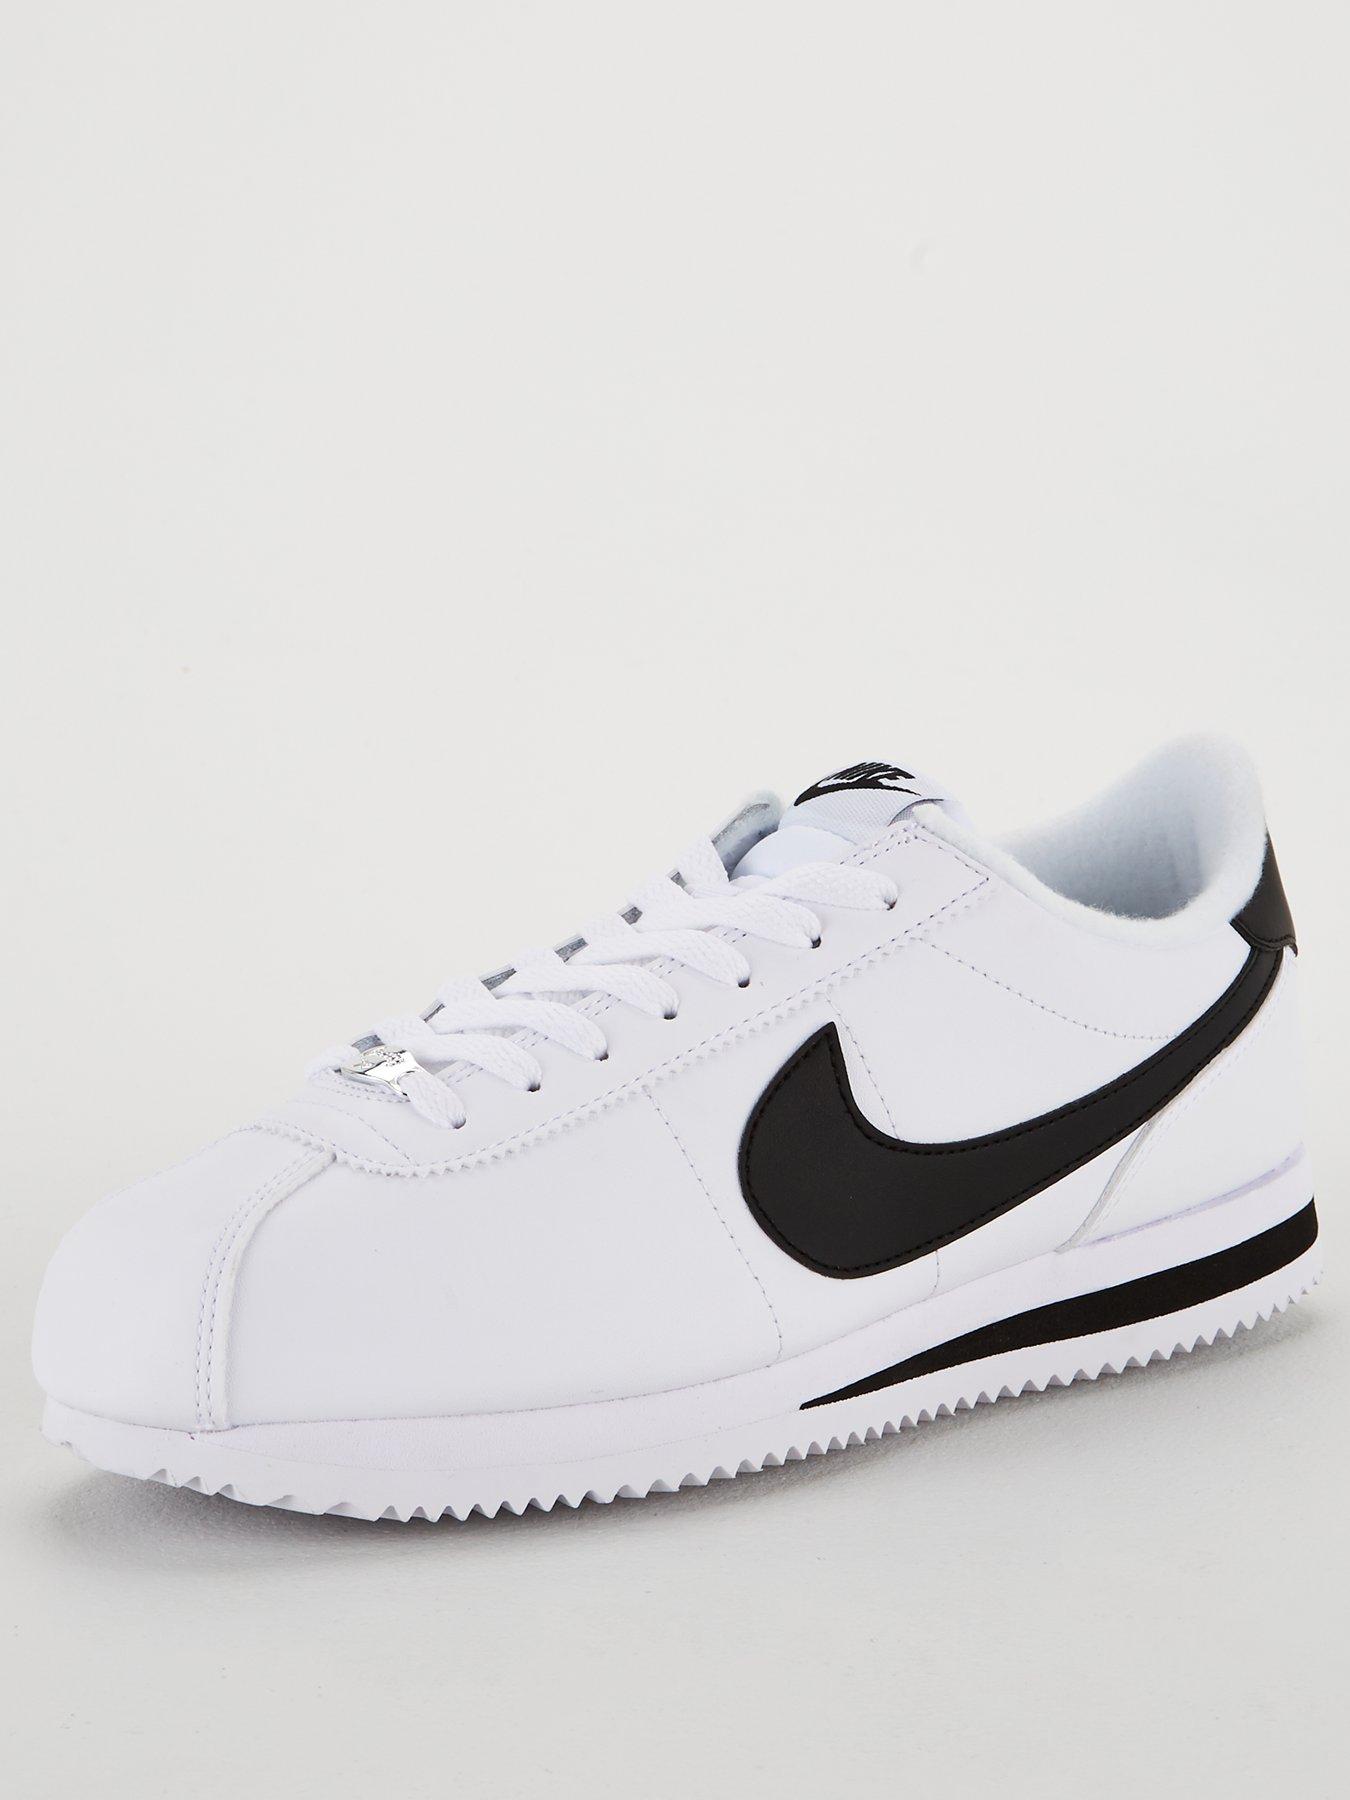 Nike Cortez Basic Leather - White/Black | very.co.uk